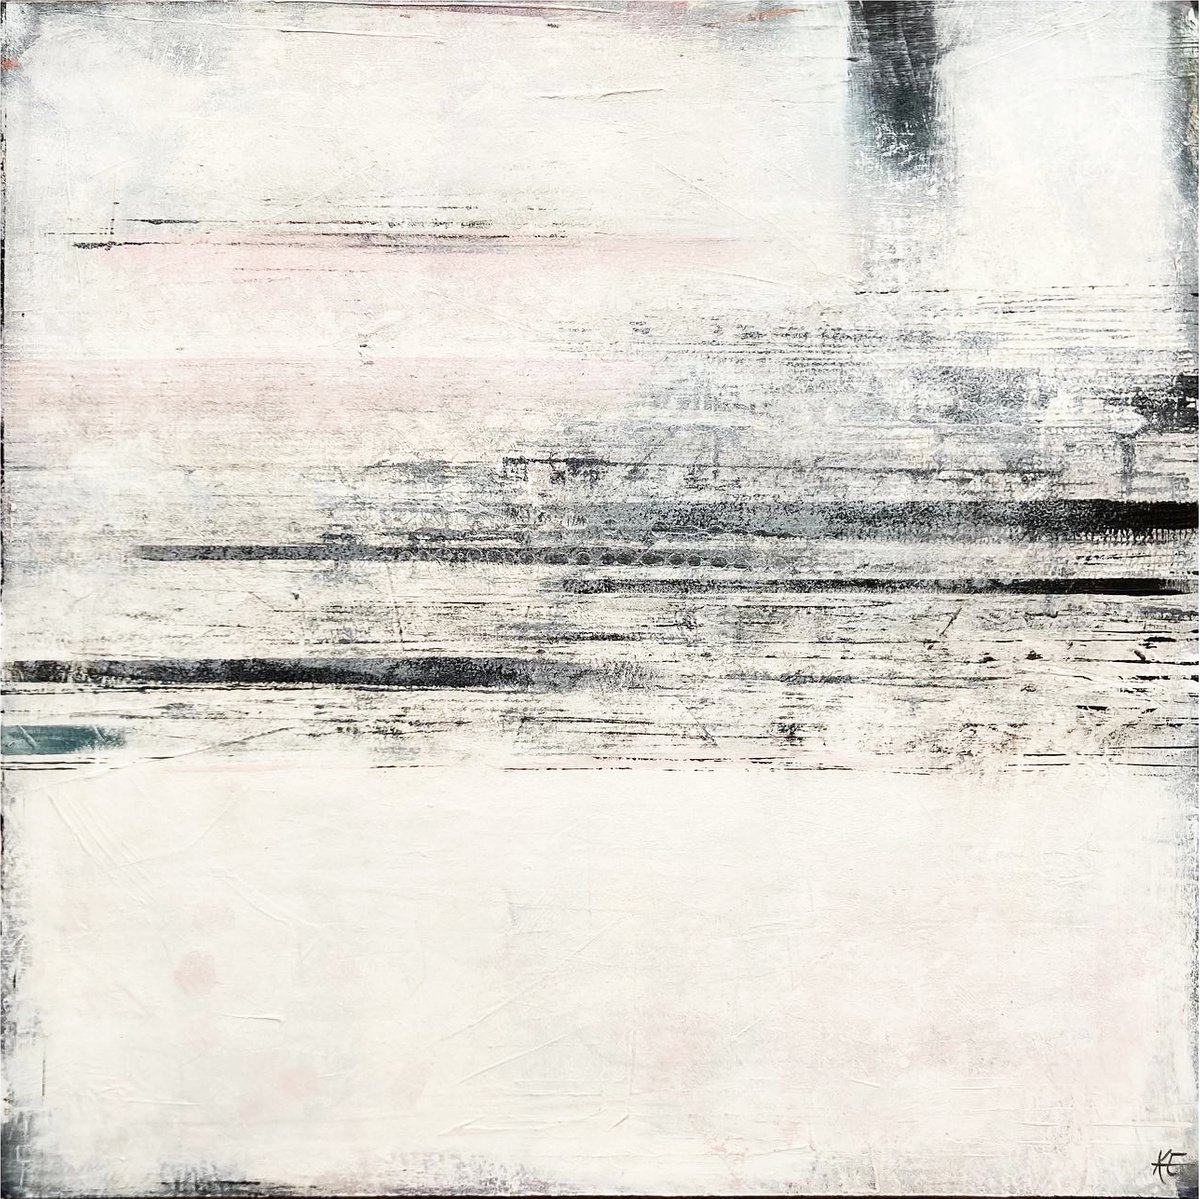 White Noise by Kath Edwards